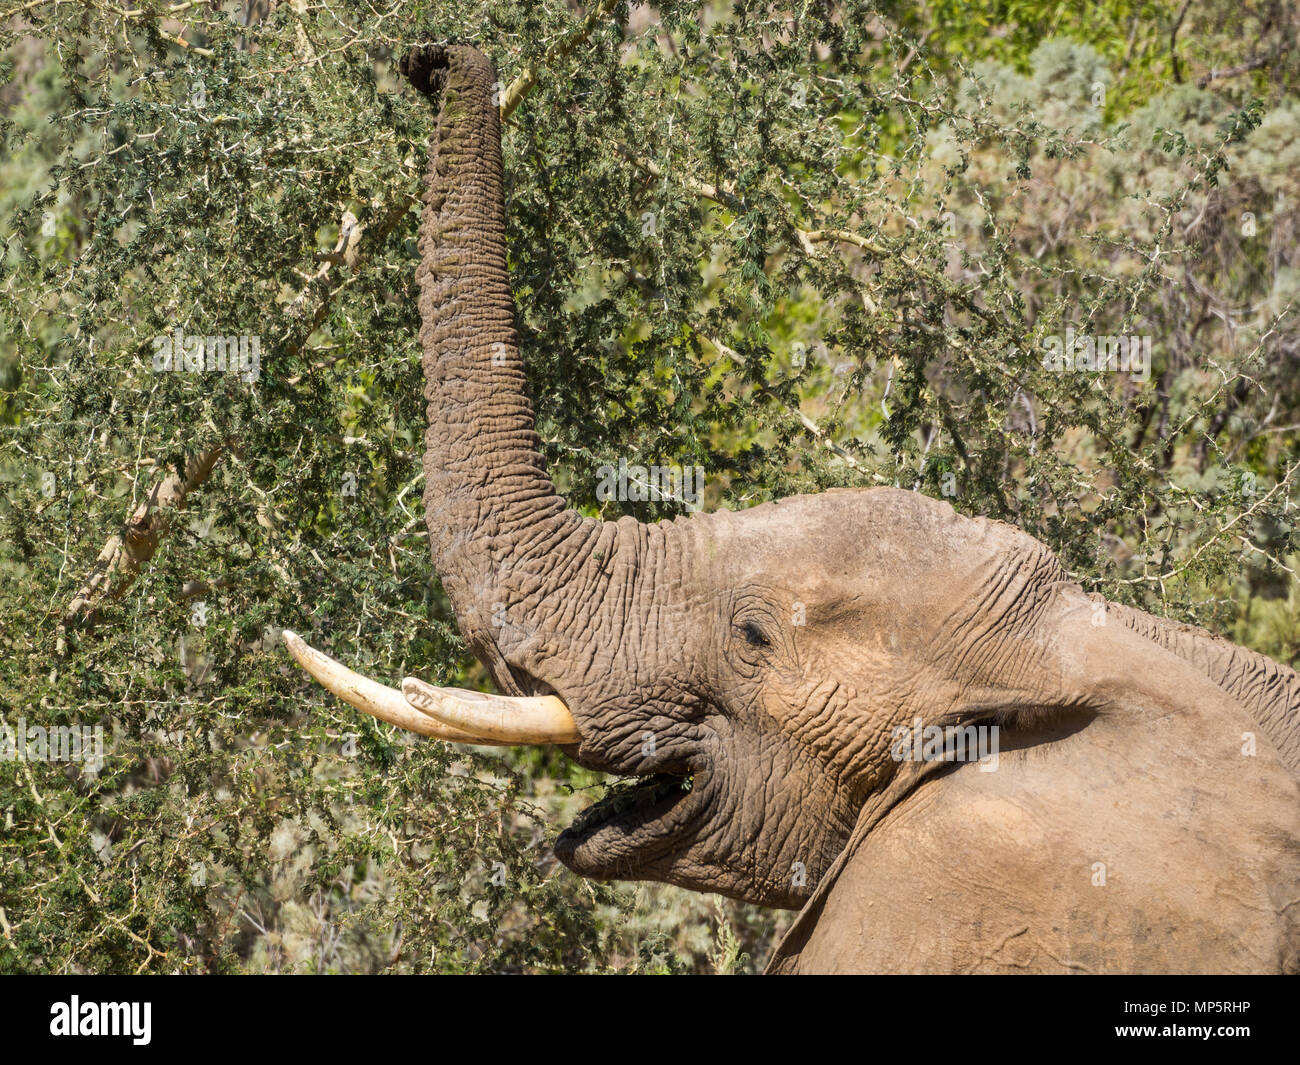 Portrait de l'homme éléphant du désert se nourrissant d'arbre dans la rivière Hoarusib bed, Namibie, Afrique du Sud Banque D'Images